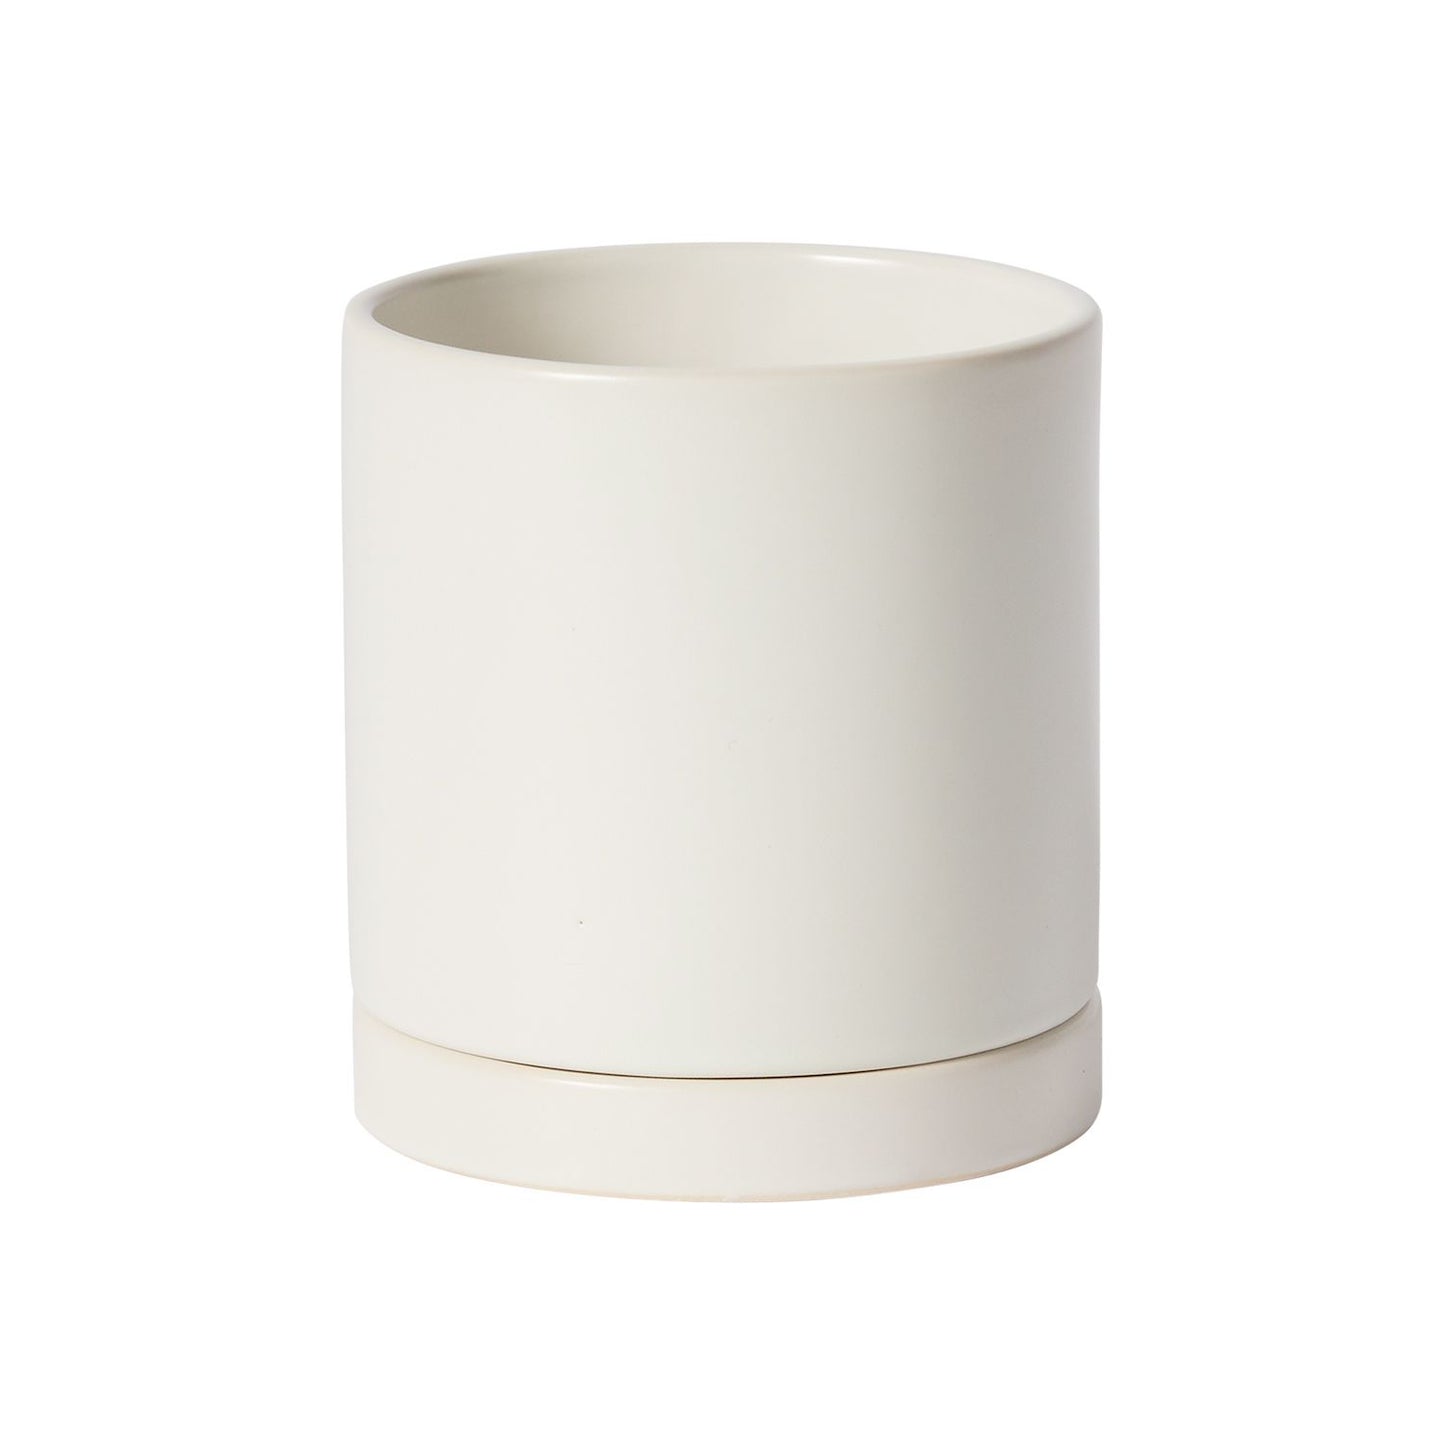 White Romey Pot 4.25"x 4.75"